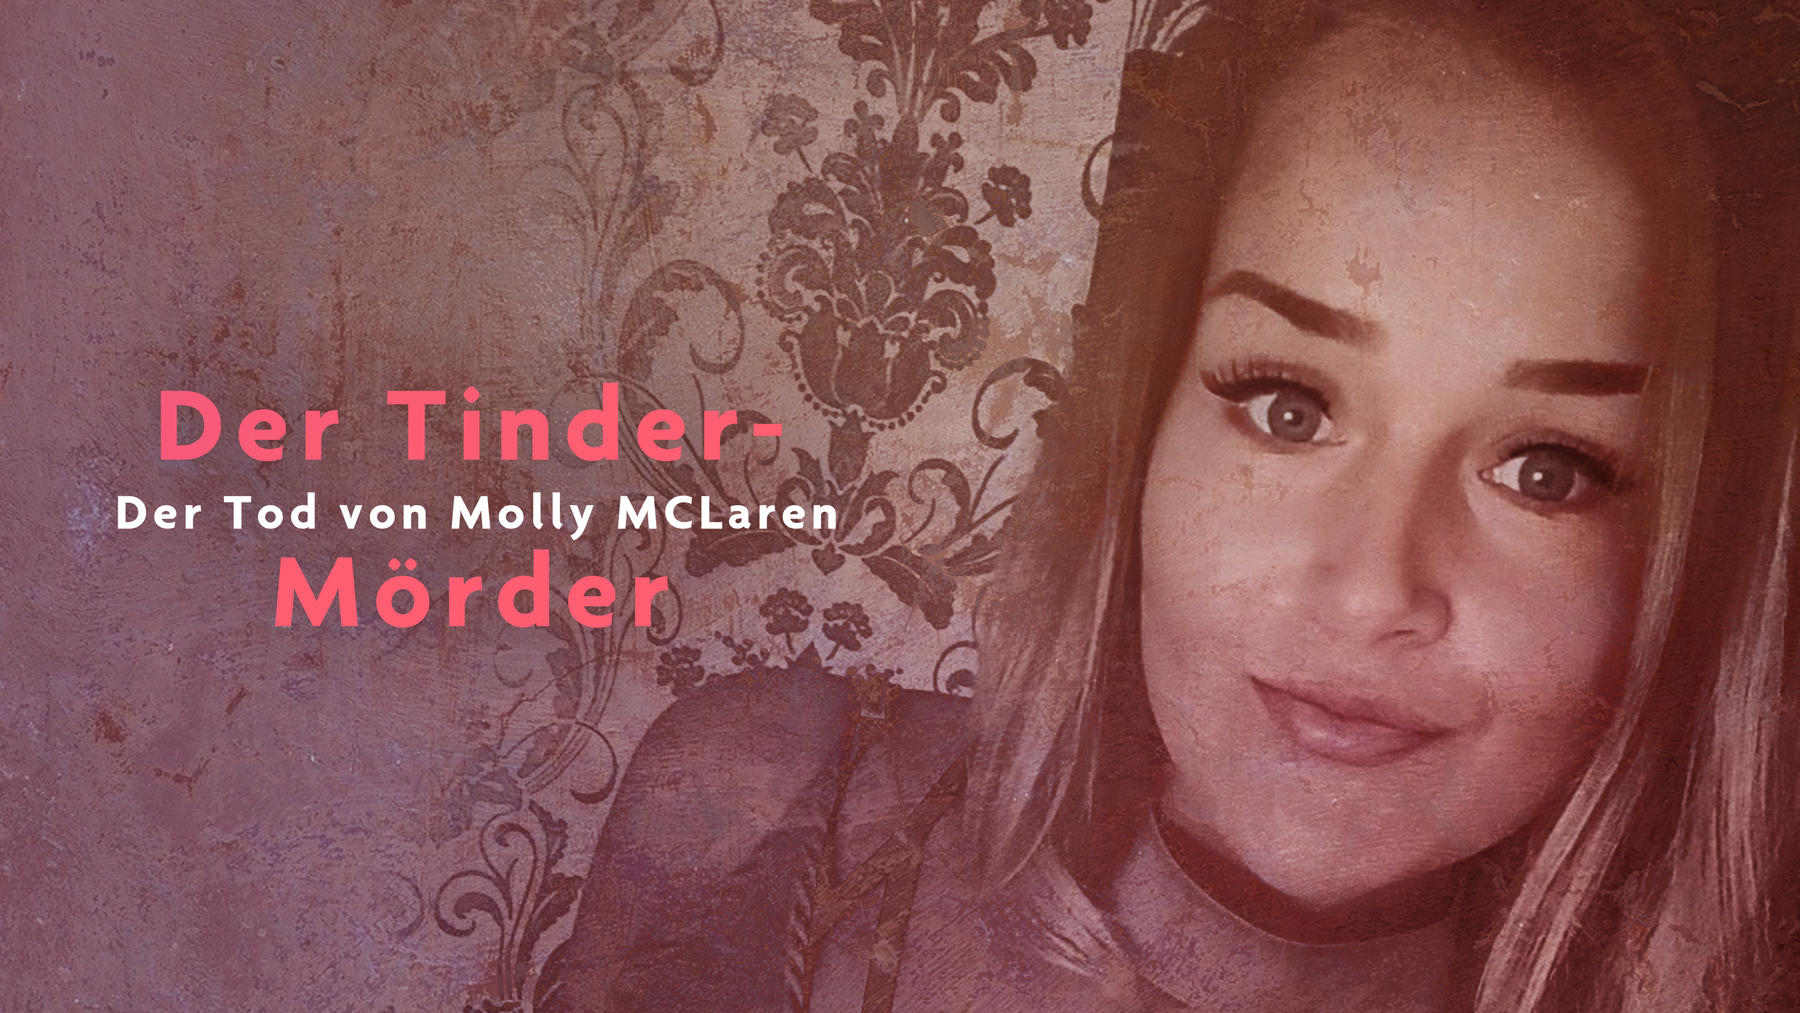 Der Tinder-Mörder - Der Fall Molly McLaren